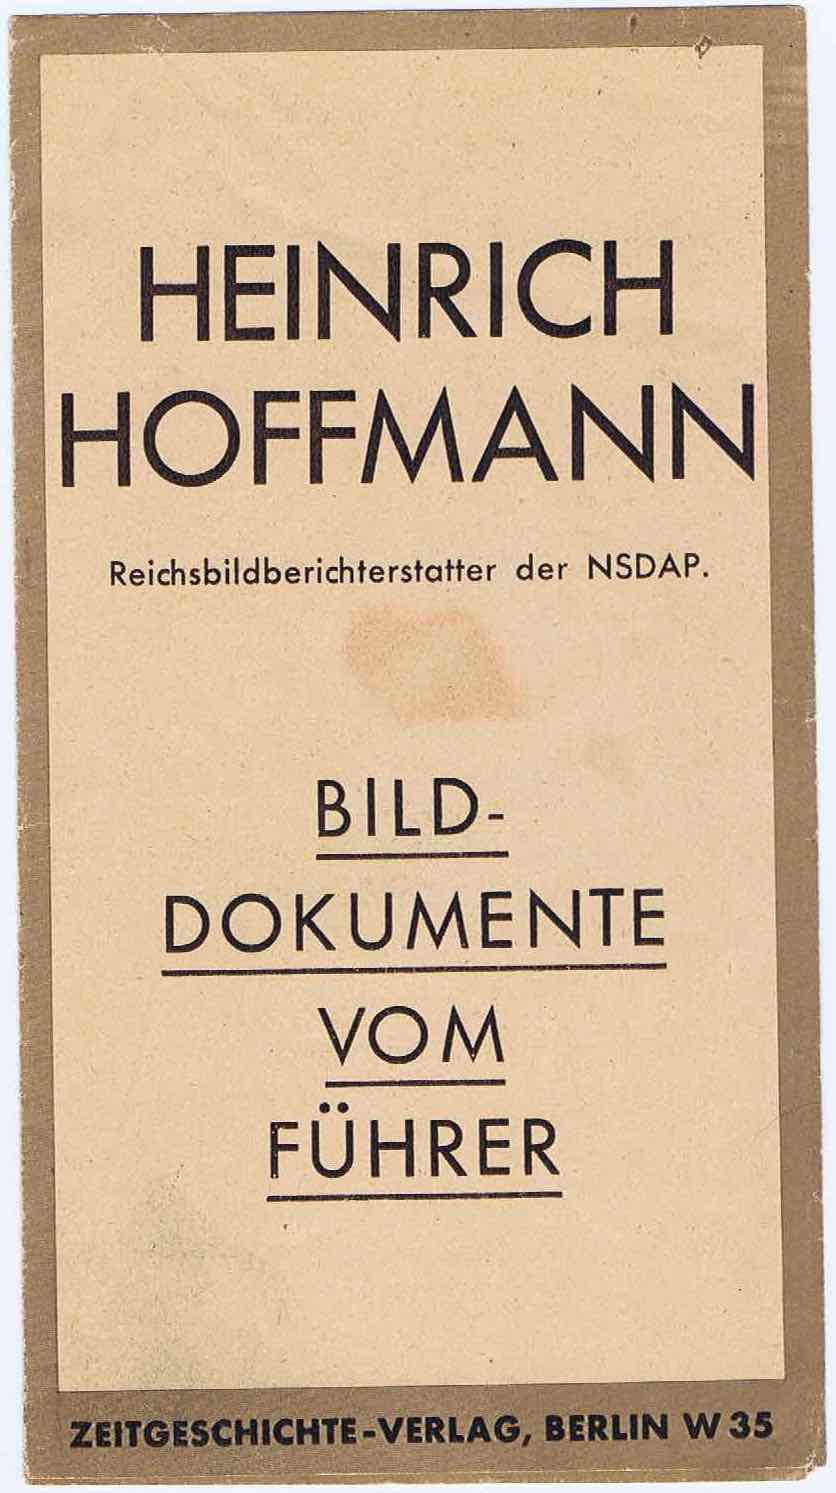 J339	HEINRICH HOFFMANN - BILD-DOKUMENTE VOM FUHRER